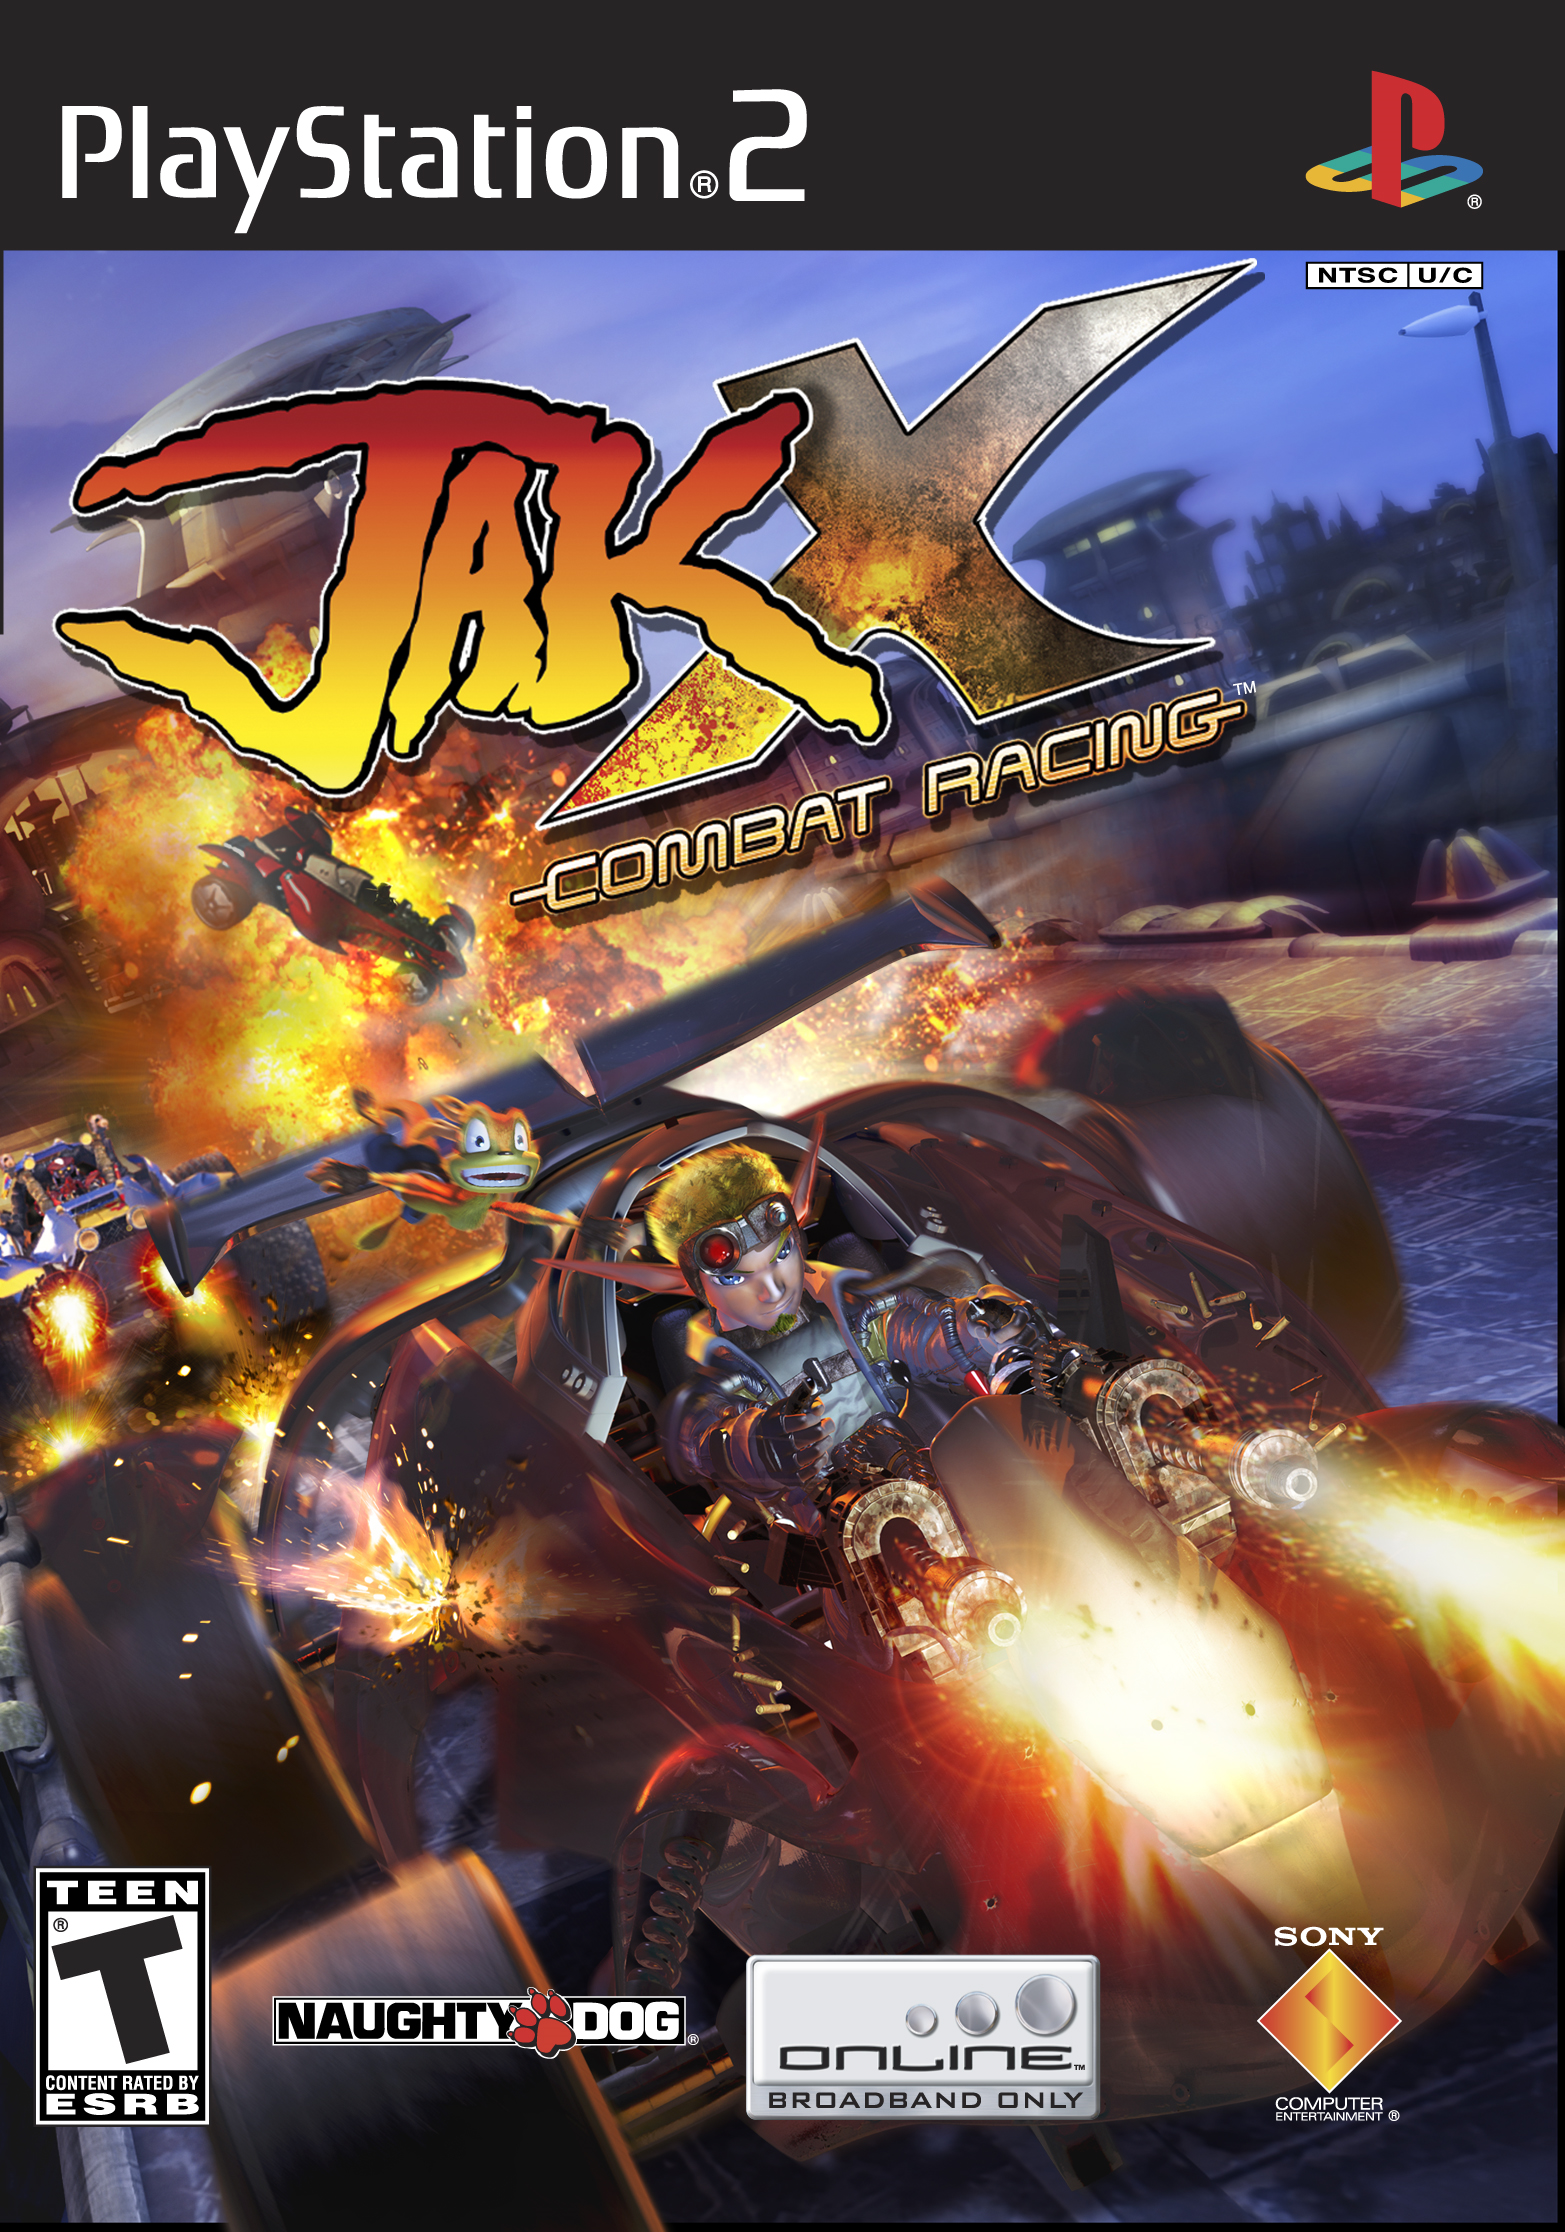 Jak x Combat Racing ps2. Jak x Combat Racing ps2 Cover. Jak & Daxter плейстейшен 2. Гонки на плейстейшен 2.